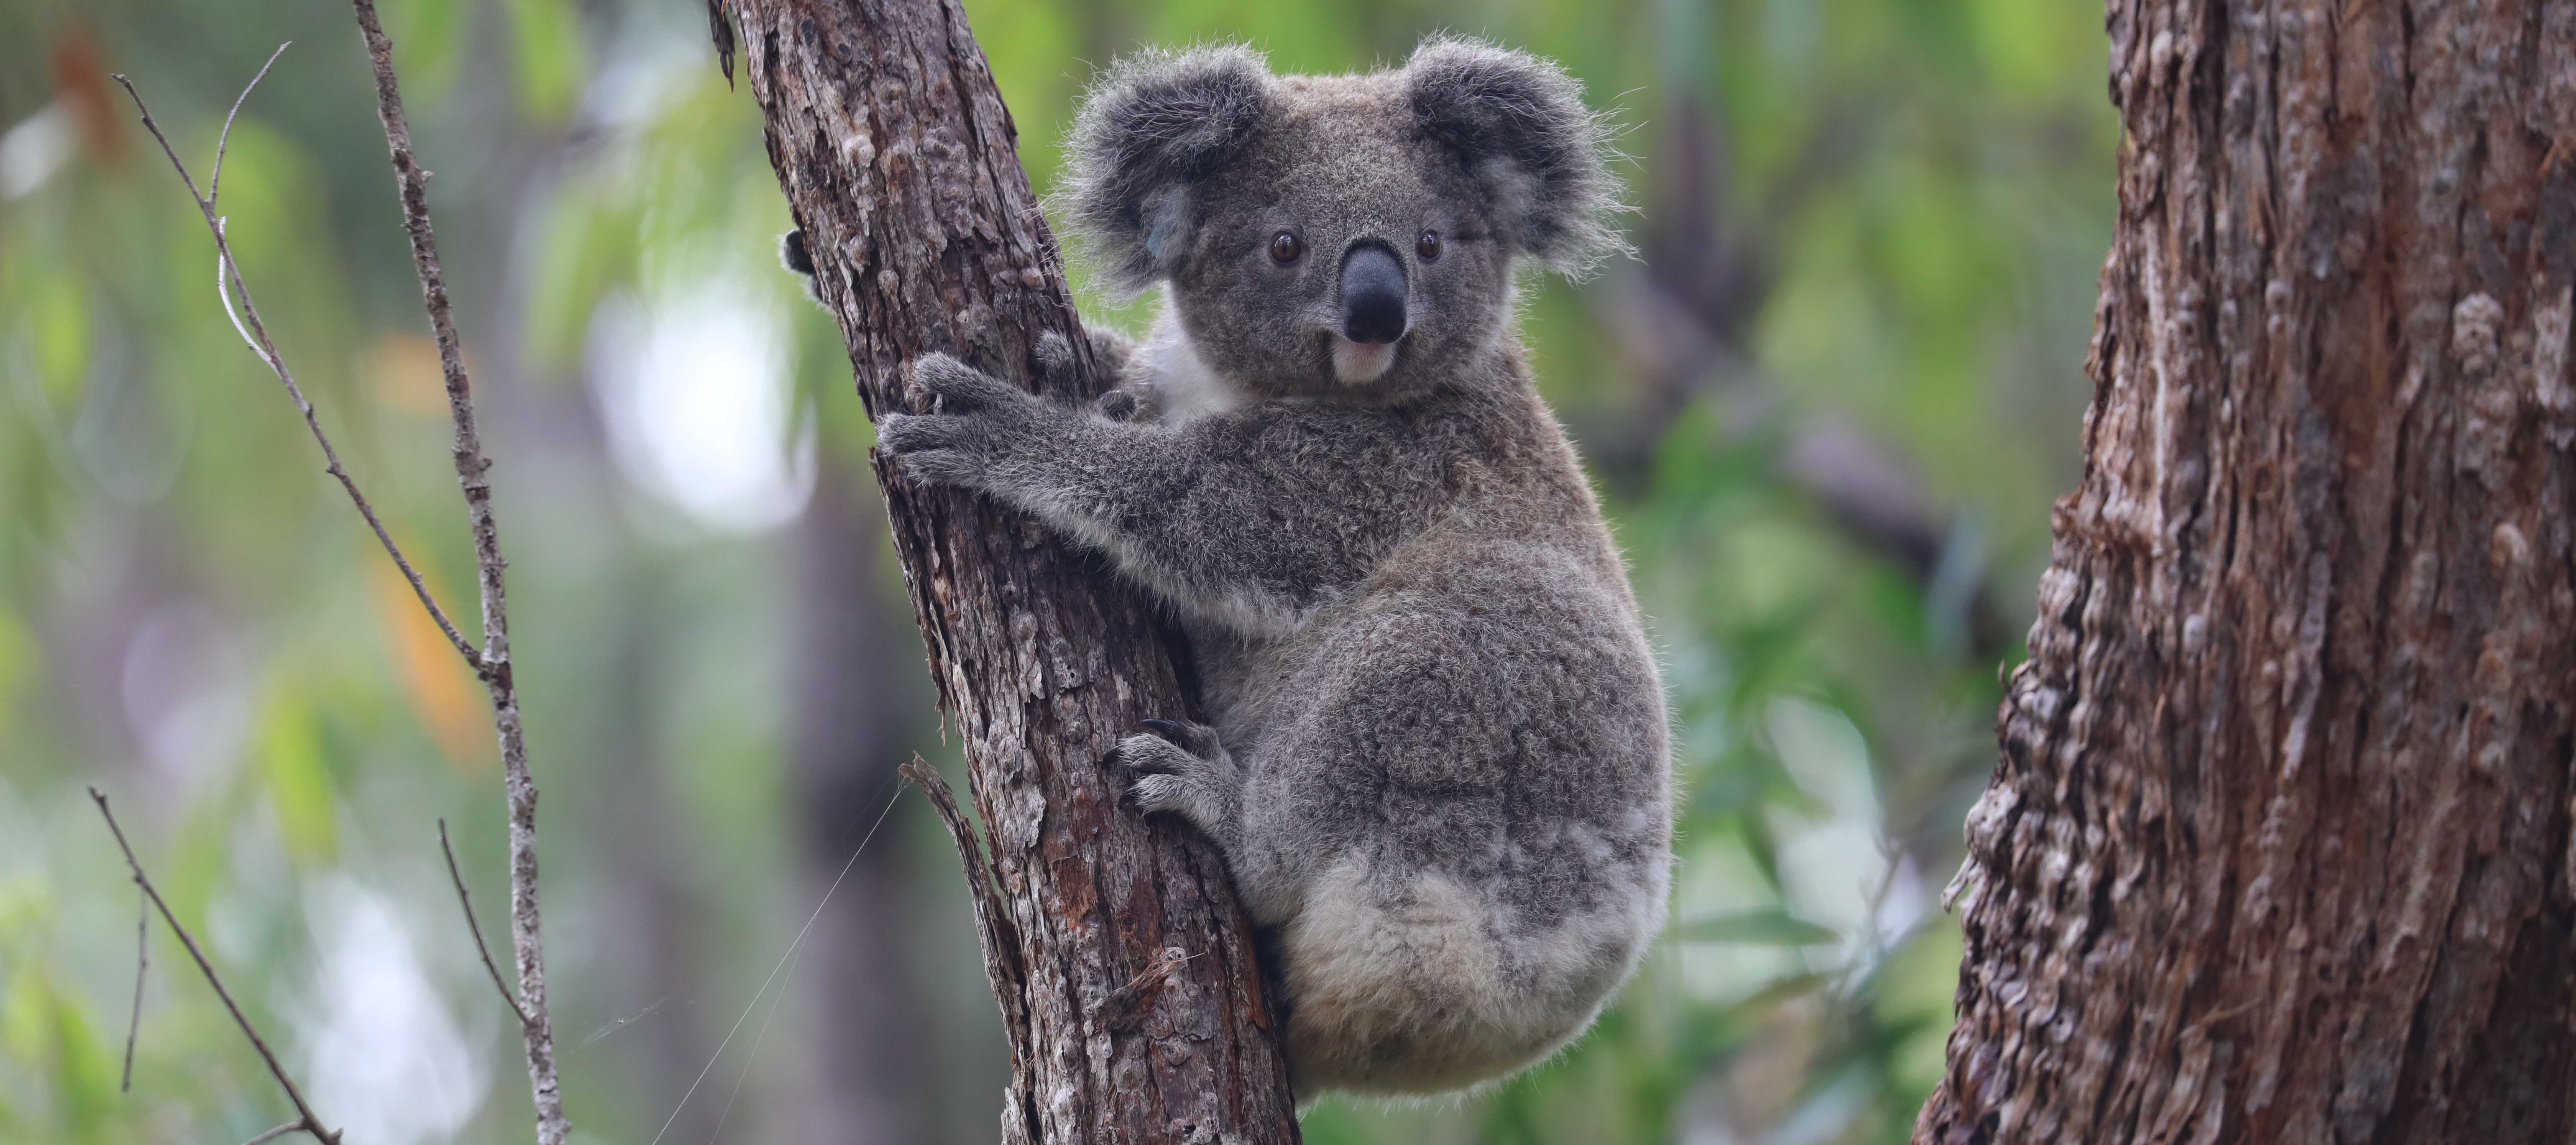 Koala on feed tree